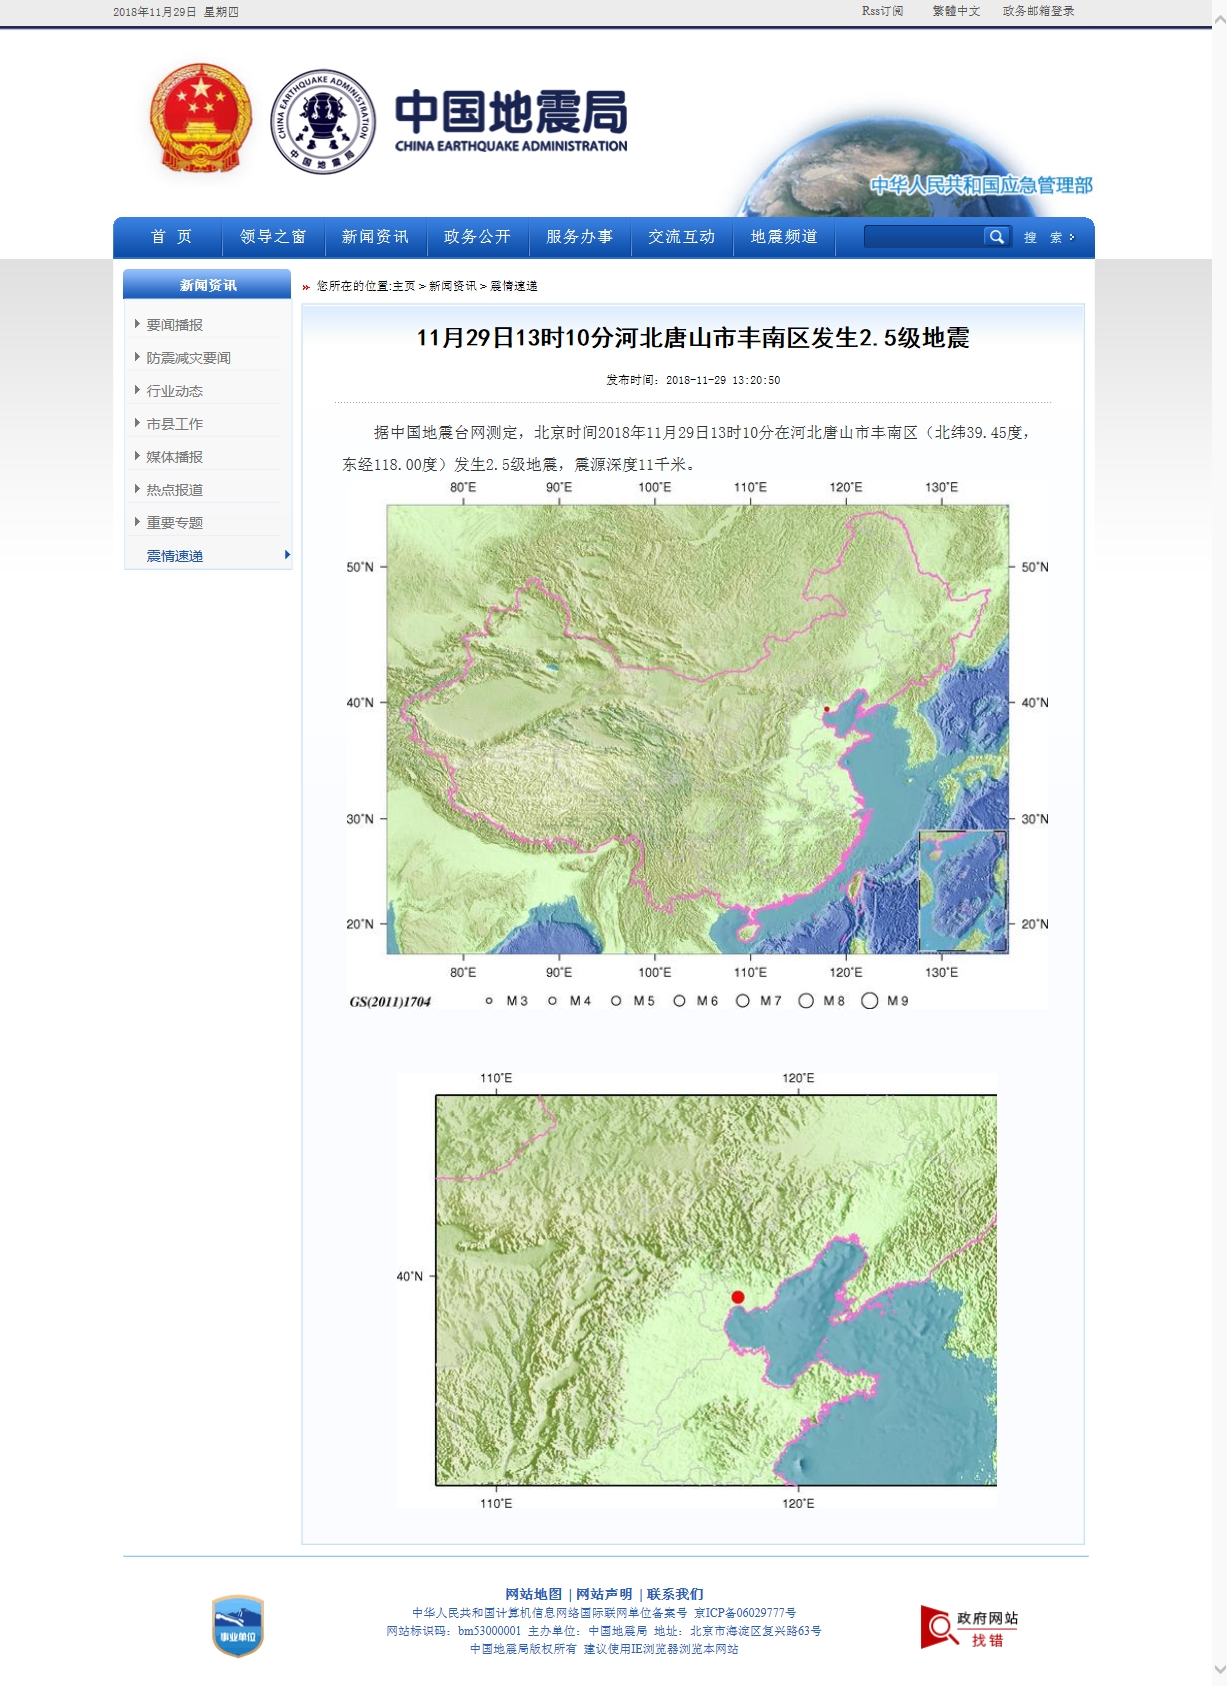 11月29日13时10分河北唐山市丰南区发生2.5级地震.jpg